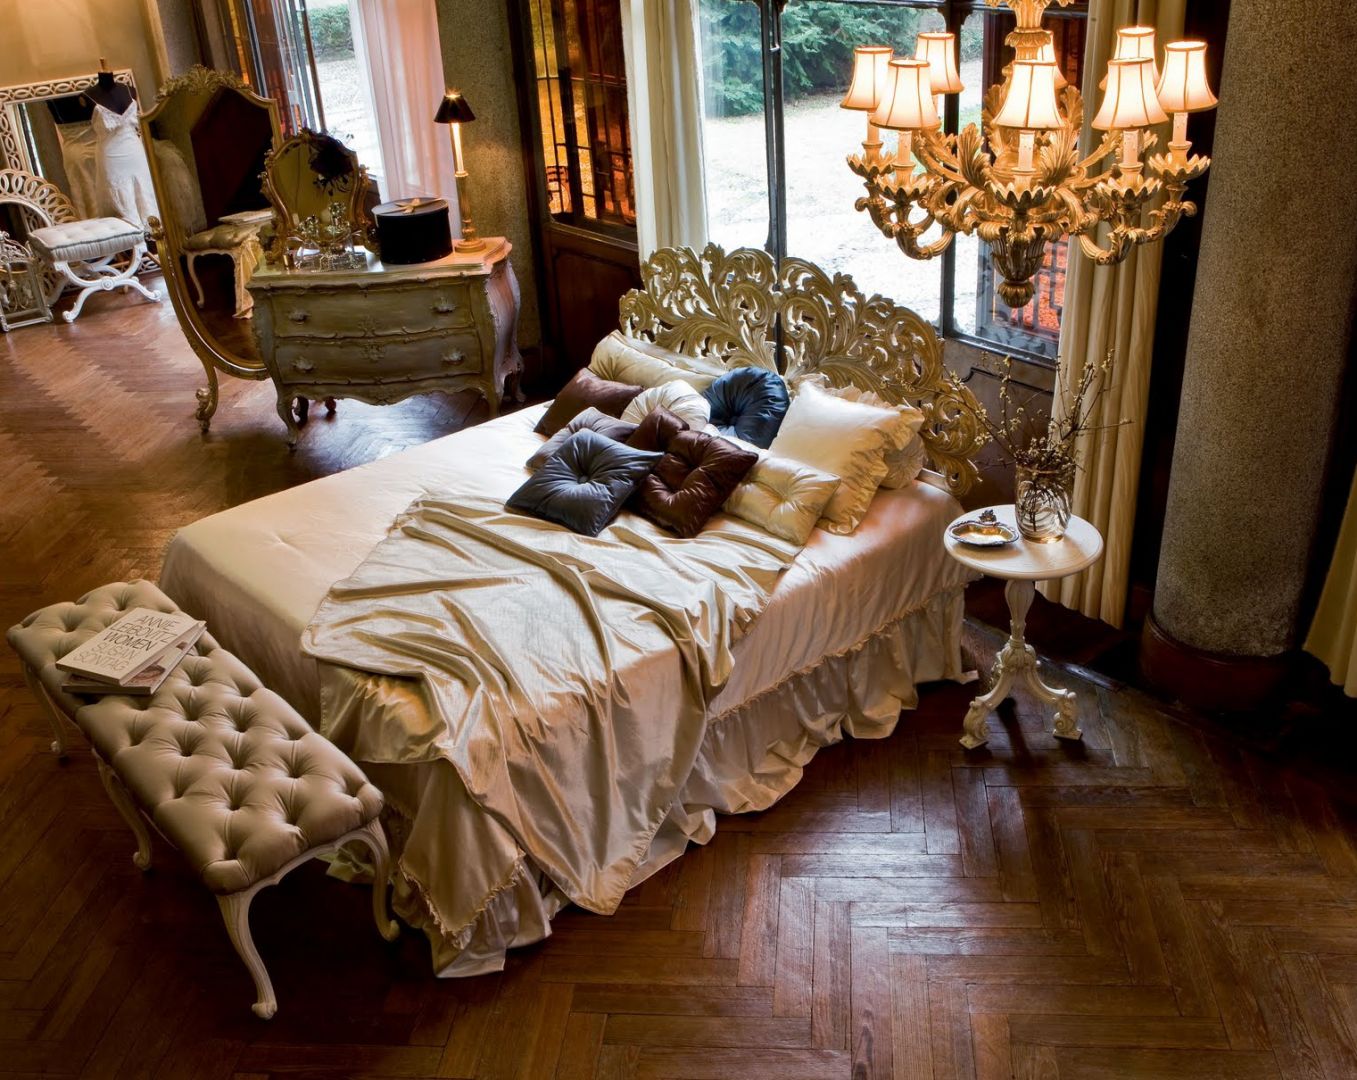 Łoże w stylu retro pięknie prezentuje się w towarzystwie sypialnianej ławki. Fot. Roberti Giovannini 